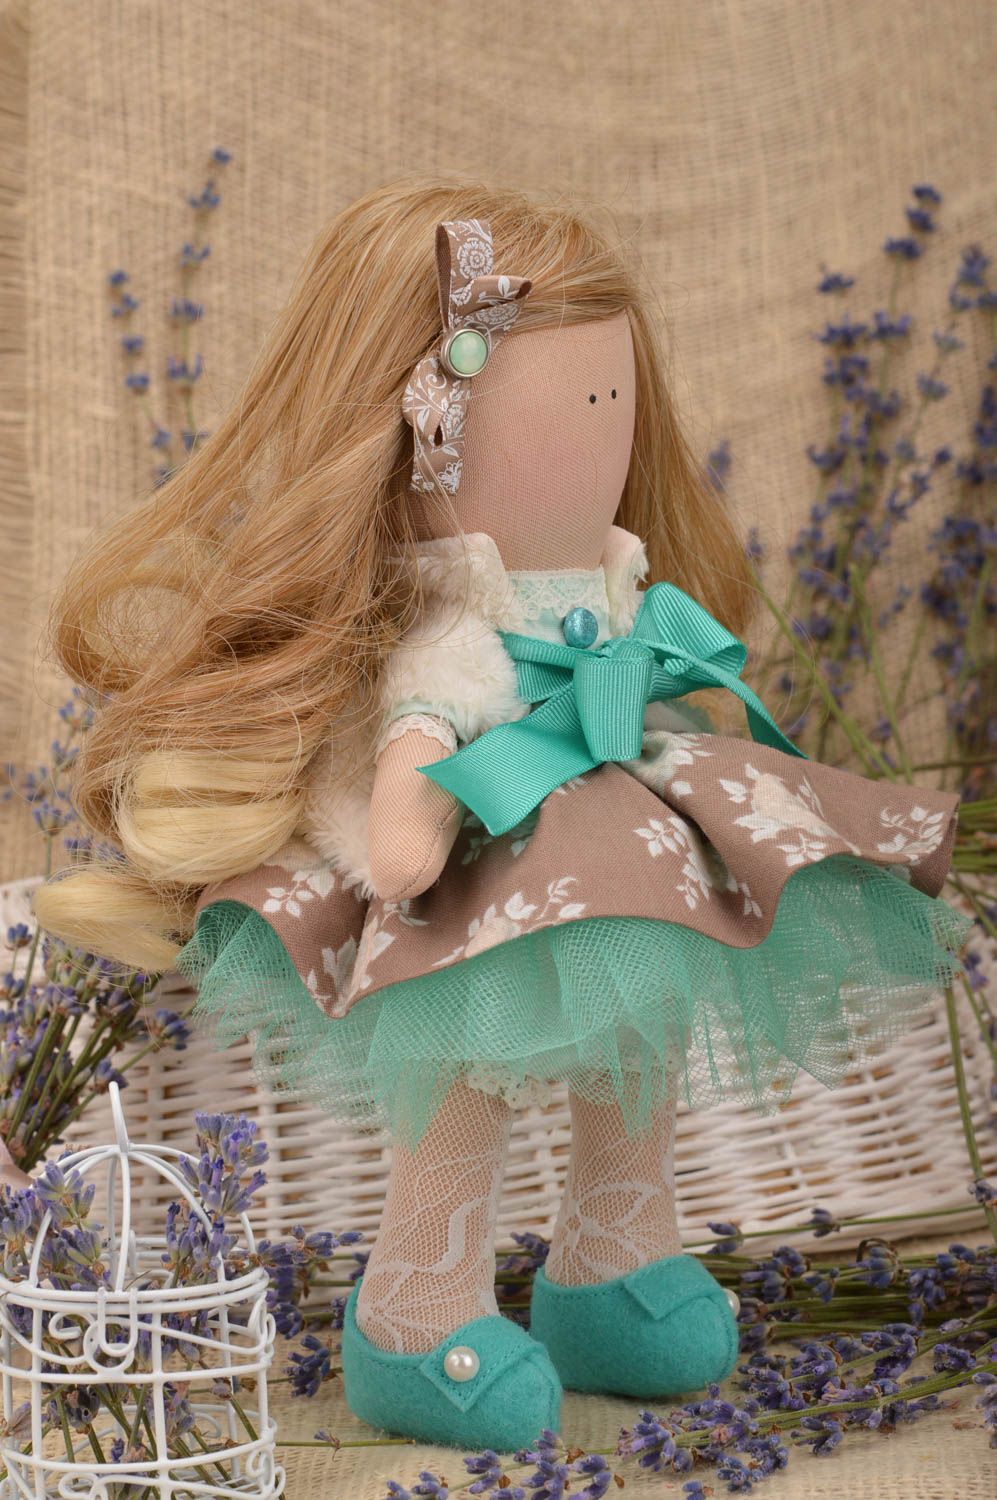 Interieur Puppe handmade aus Trikotage im schönen Kleid künstlerisch  foto 1